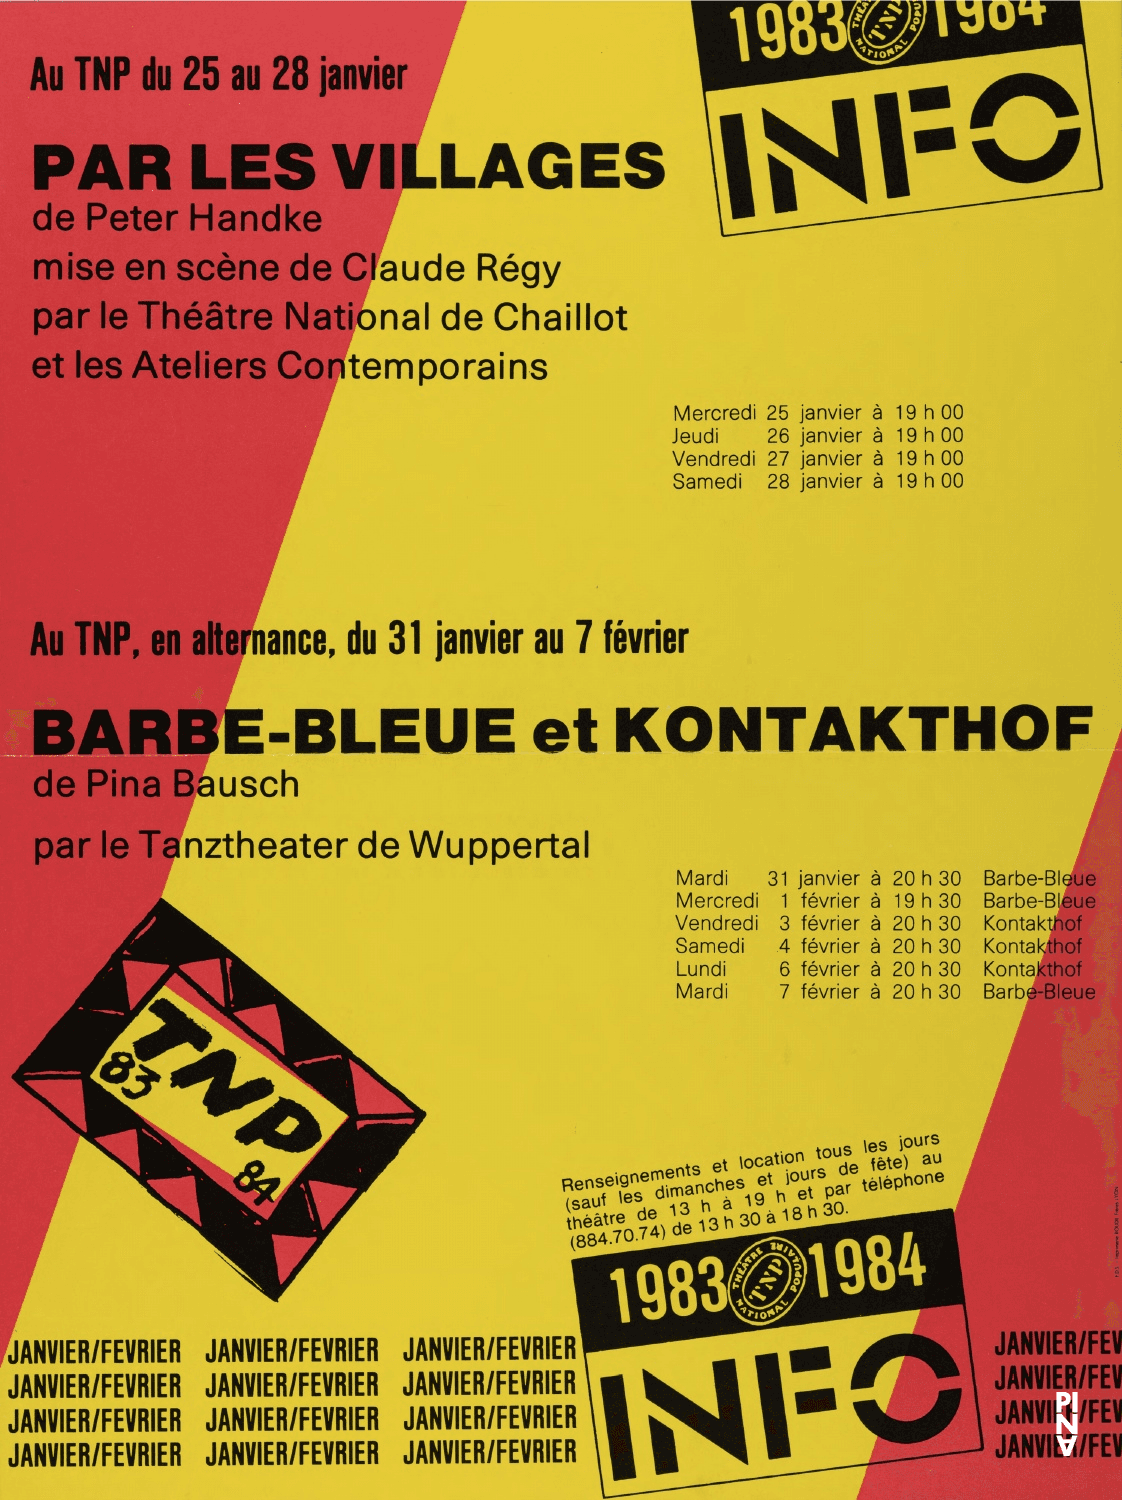 Calendrier des spectacles pour « Barbe-Bleue. En écoutant un enregistrement sur bande magnétique de l’opéra de Béla Bartók « Le Château de Barbe-Bleue » » et « Kontakthof » de Pina Bausch avec Tanztheater Wuppertal à Lyon, 31 jan. 1984 – 7 fév. 1984